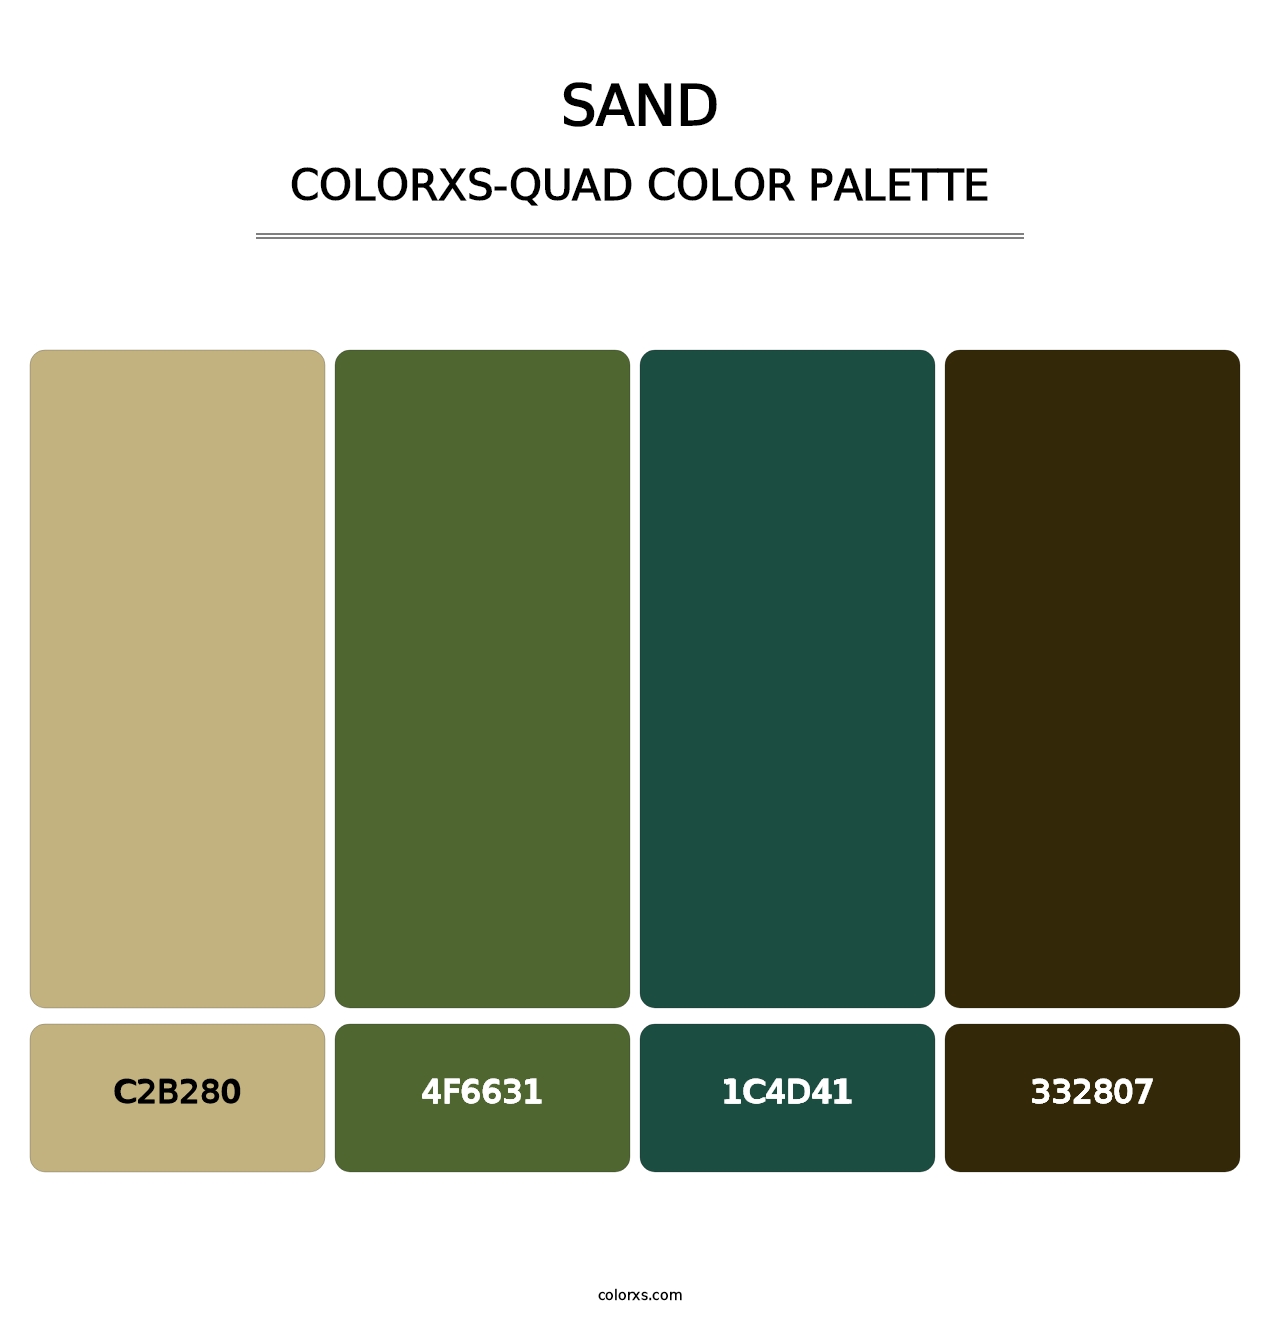 Sand - Colorxs Quad Palette